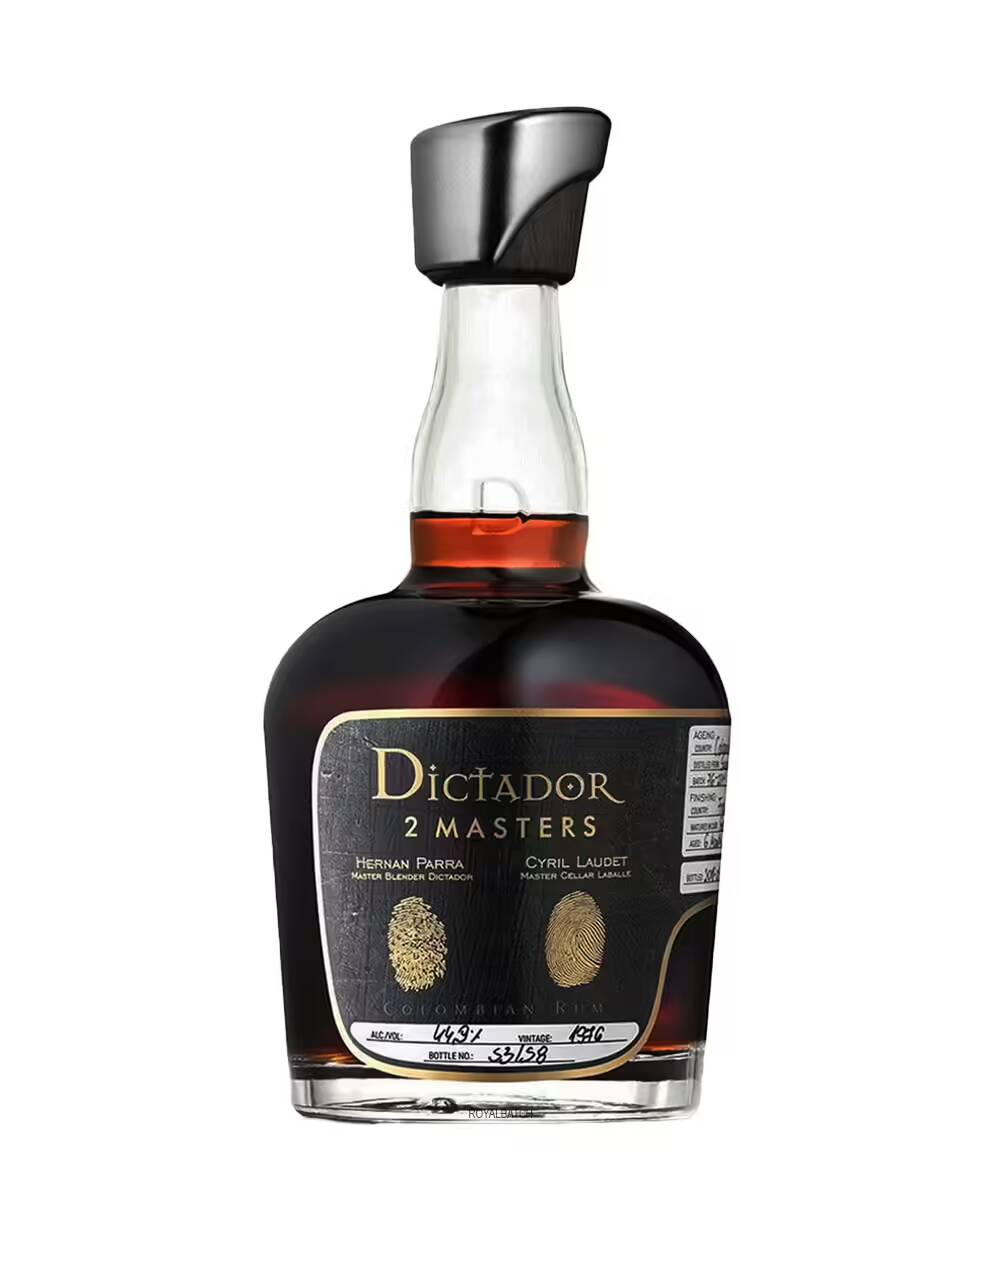 Dictador 2 Masters Barton 3 Cask 1979/1982 Rum